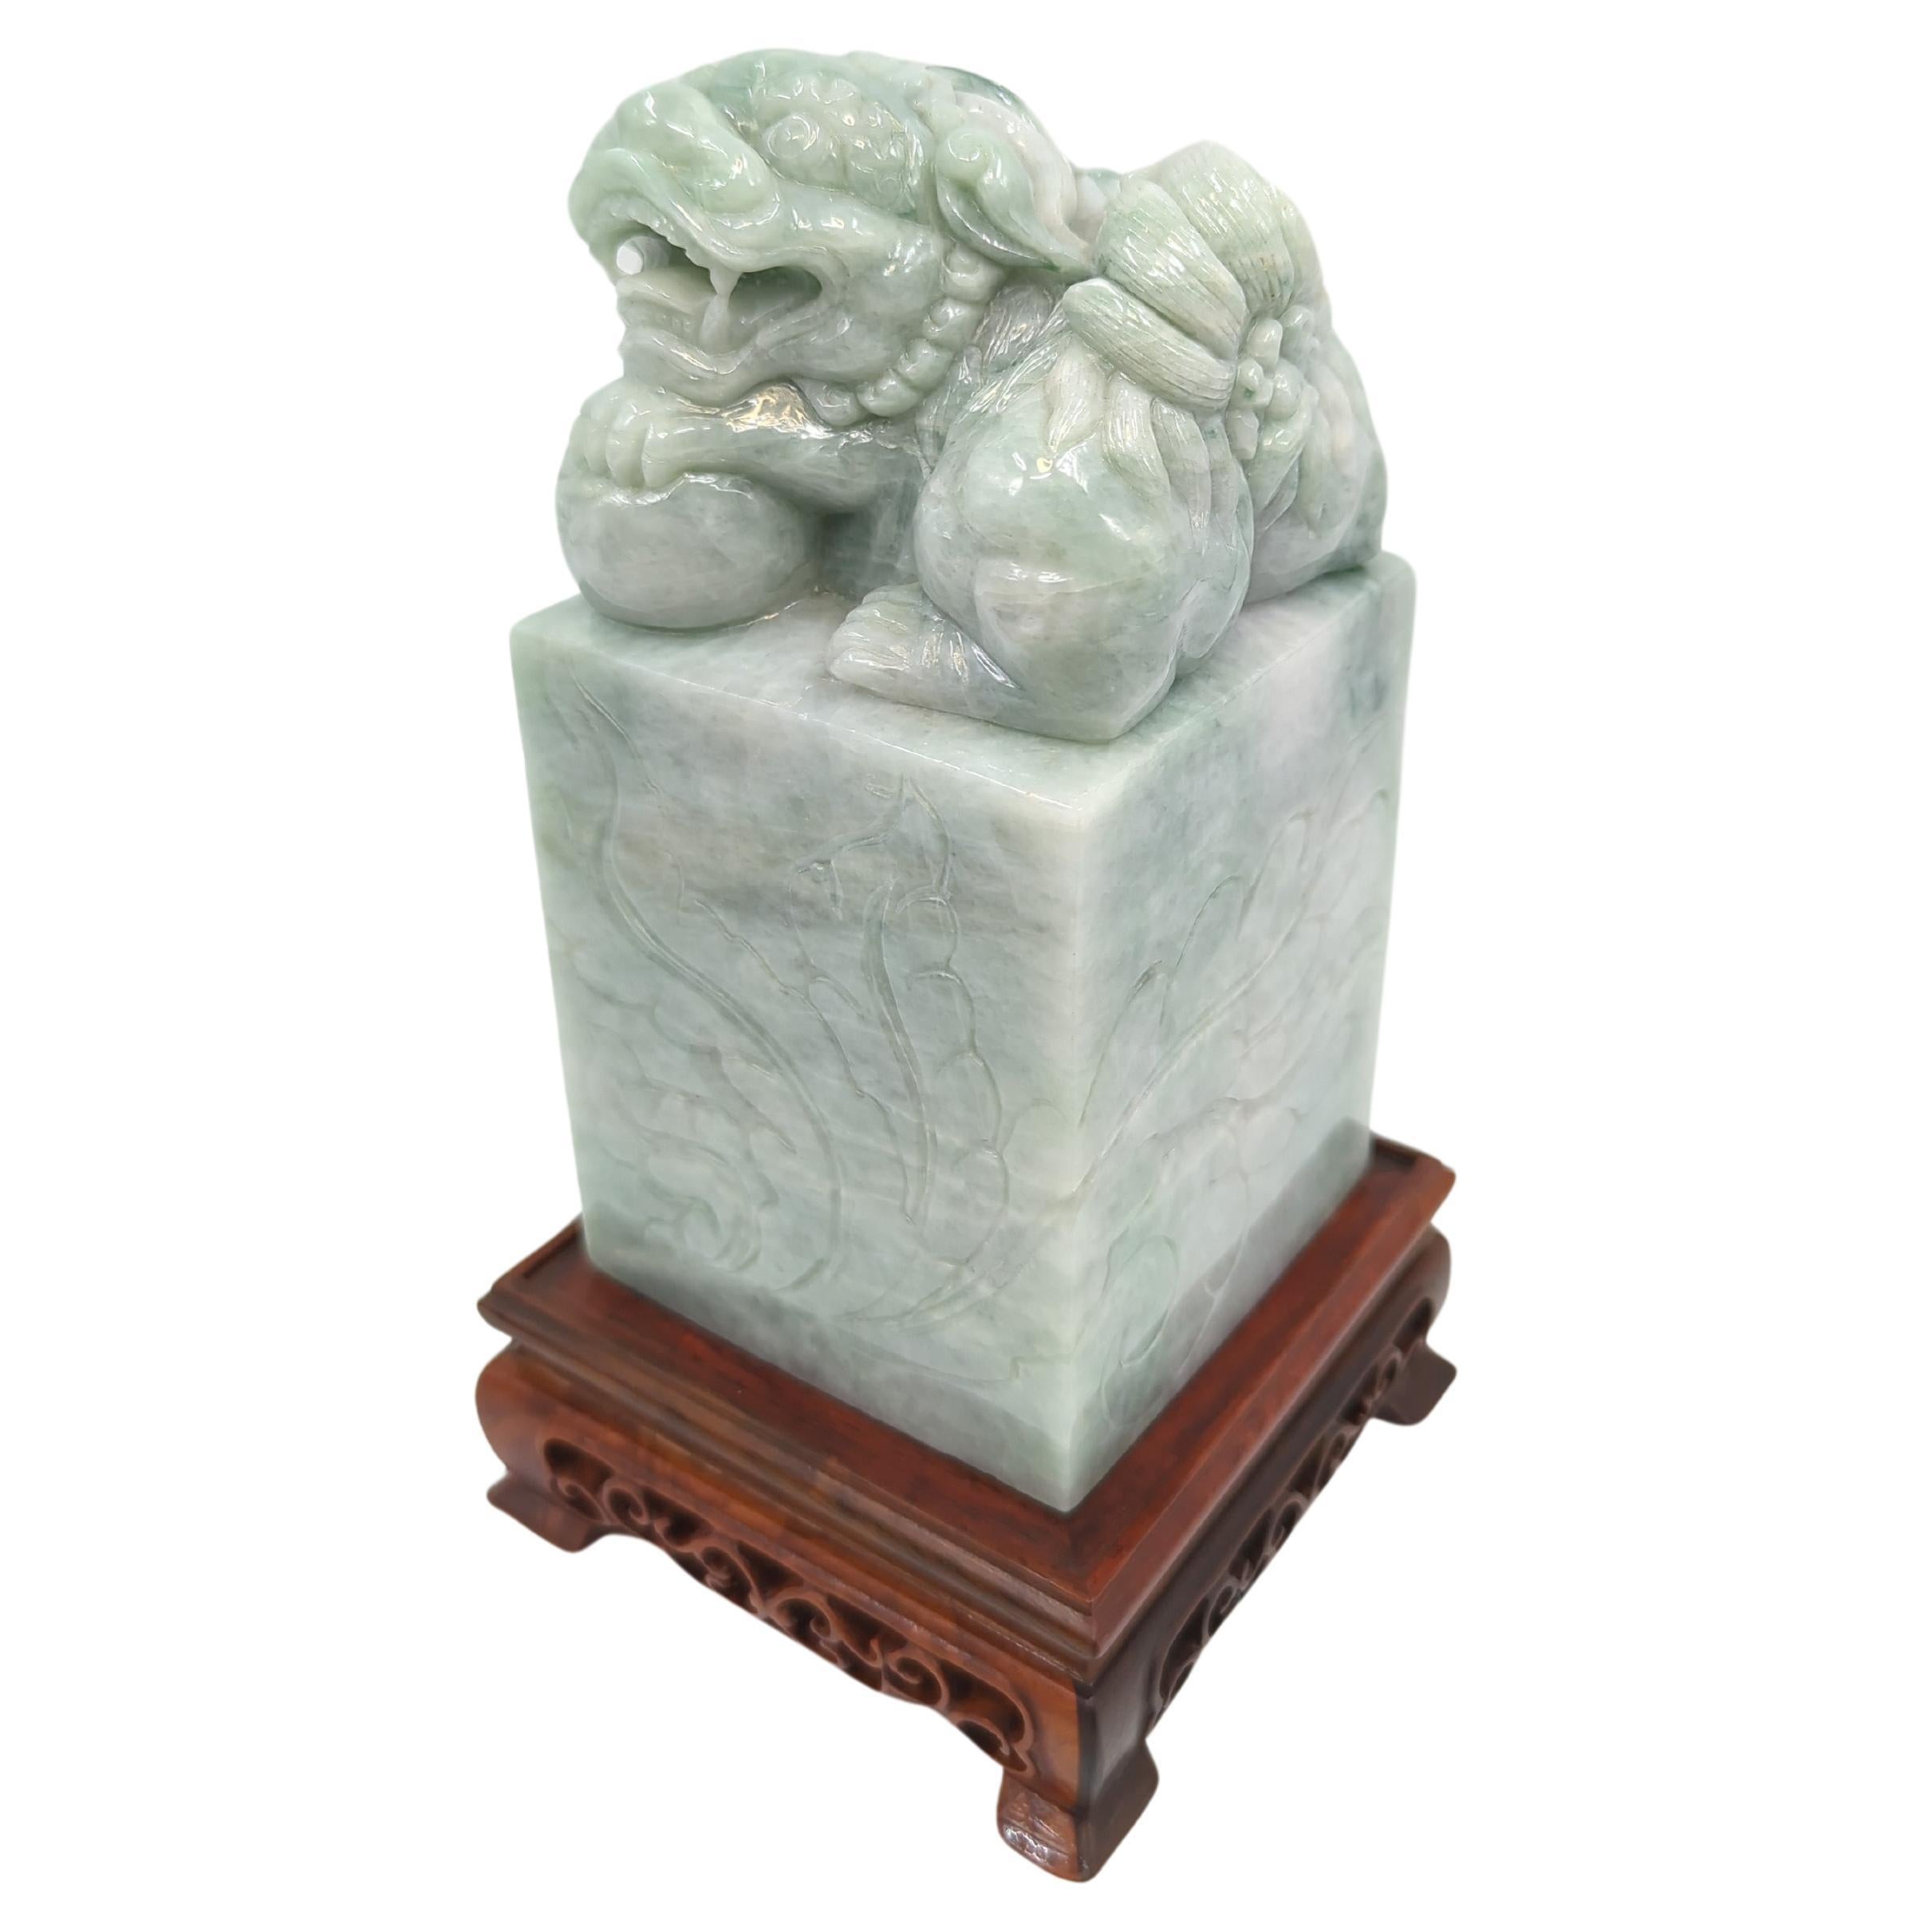 Cette pierre de scellement moderne en jadéite chinoise, d'une taille impressionnante de 8 pouces sur son socle, est une œuvre d'art remarquable, qui témoigne du savoir-faire artisanal exquis associé à la sculpture contemporaine du jade chinois.